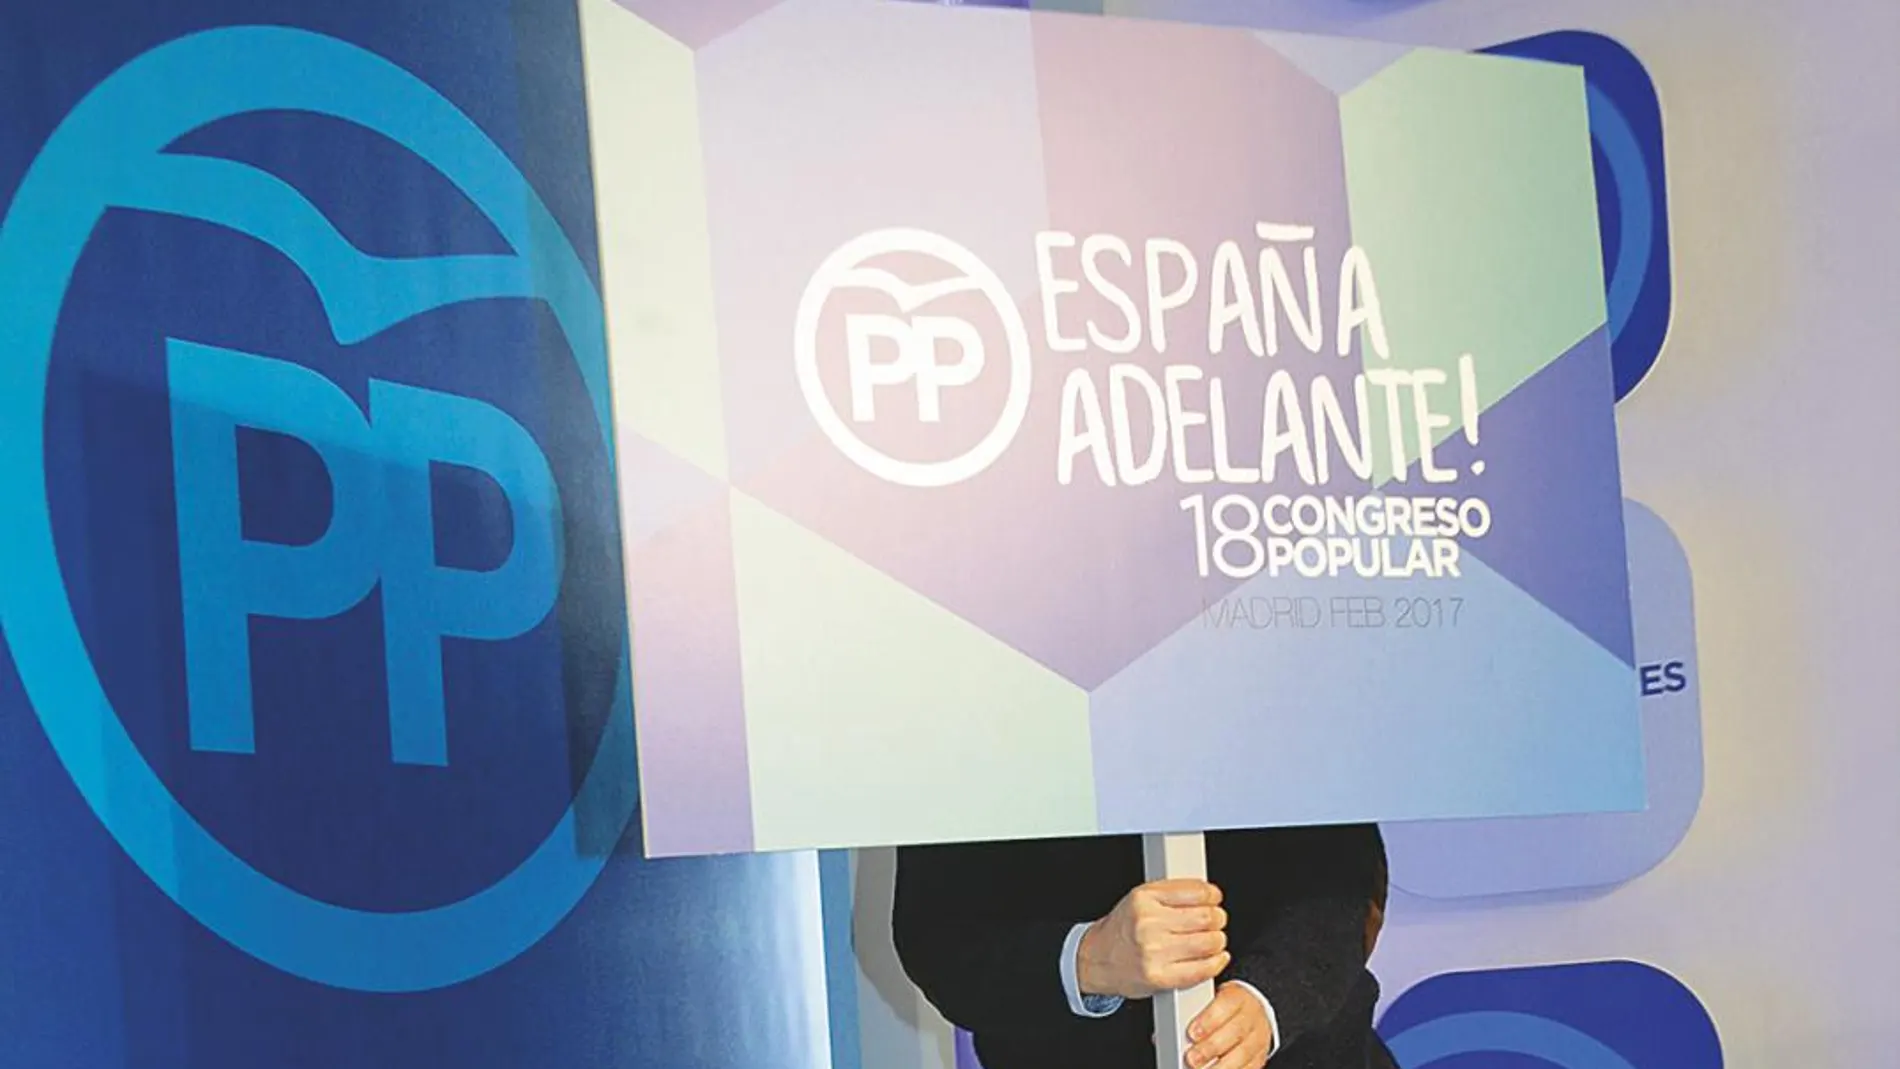 El PP afronta esta semana su congreso decisivo para renovar el liderazgo del partido tras la salida de Rajoy